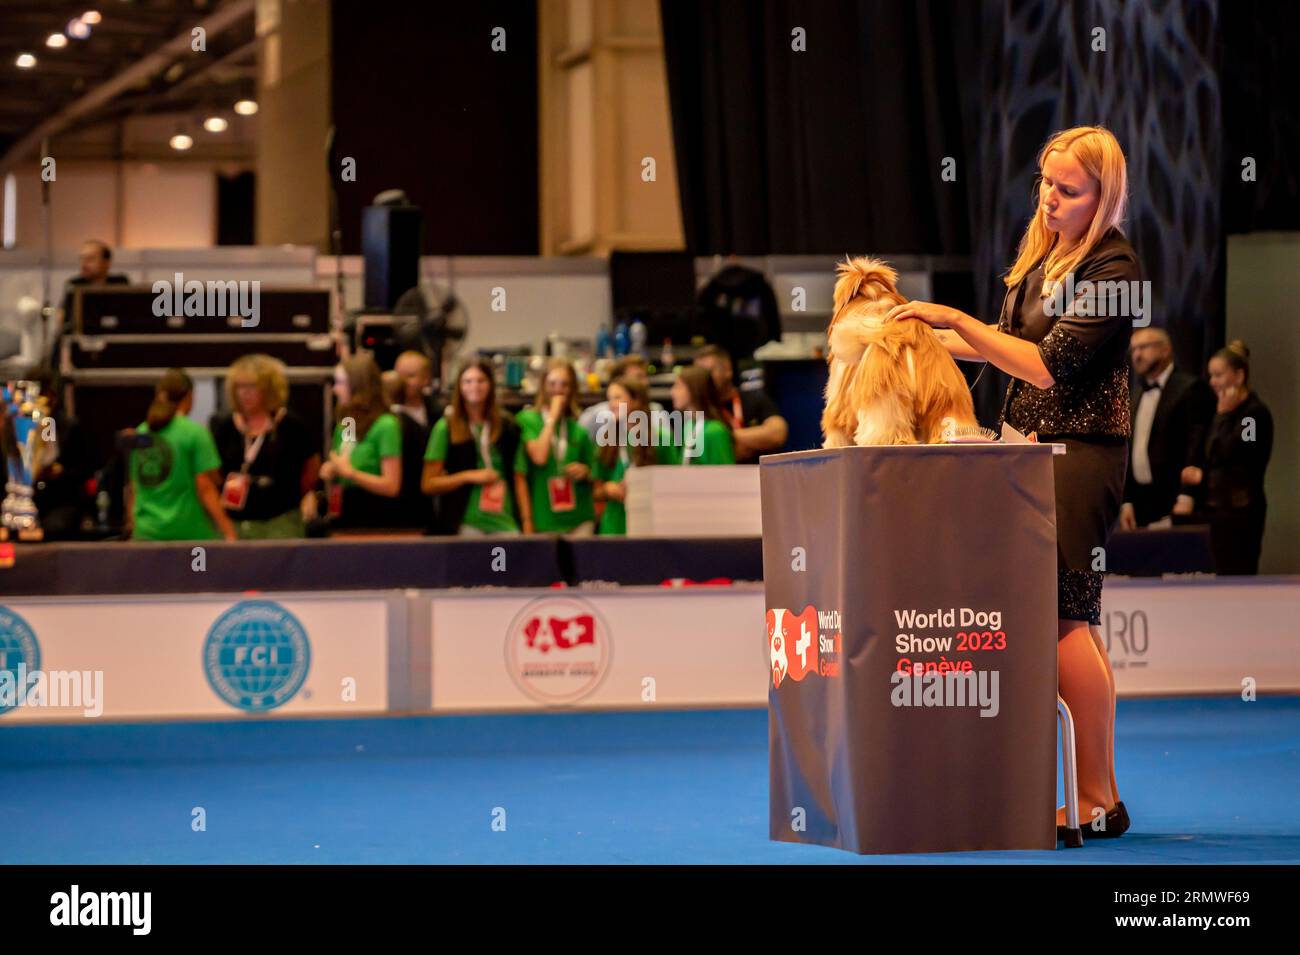 Genève, Canton de Genève, Suisse - 27 août, 2023 : chien de présentation du maître lors de l'exposition mondiale des chiens. Banque D'Images